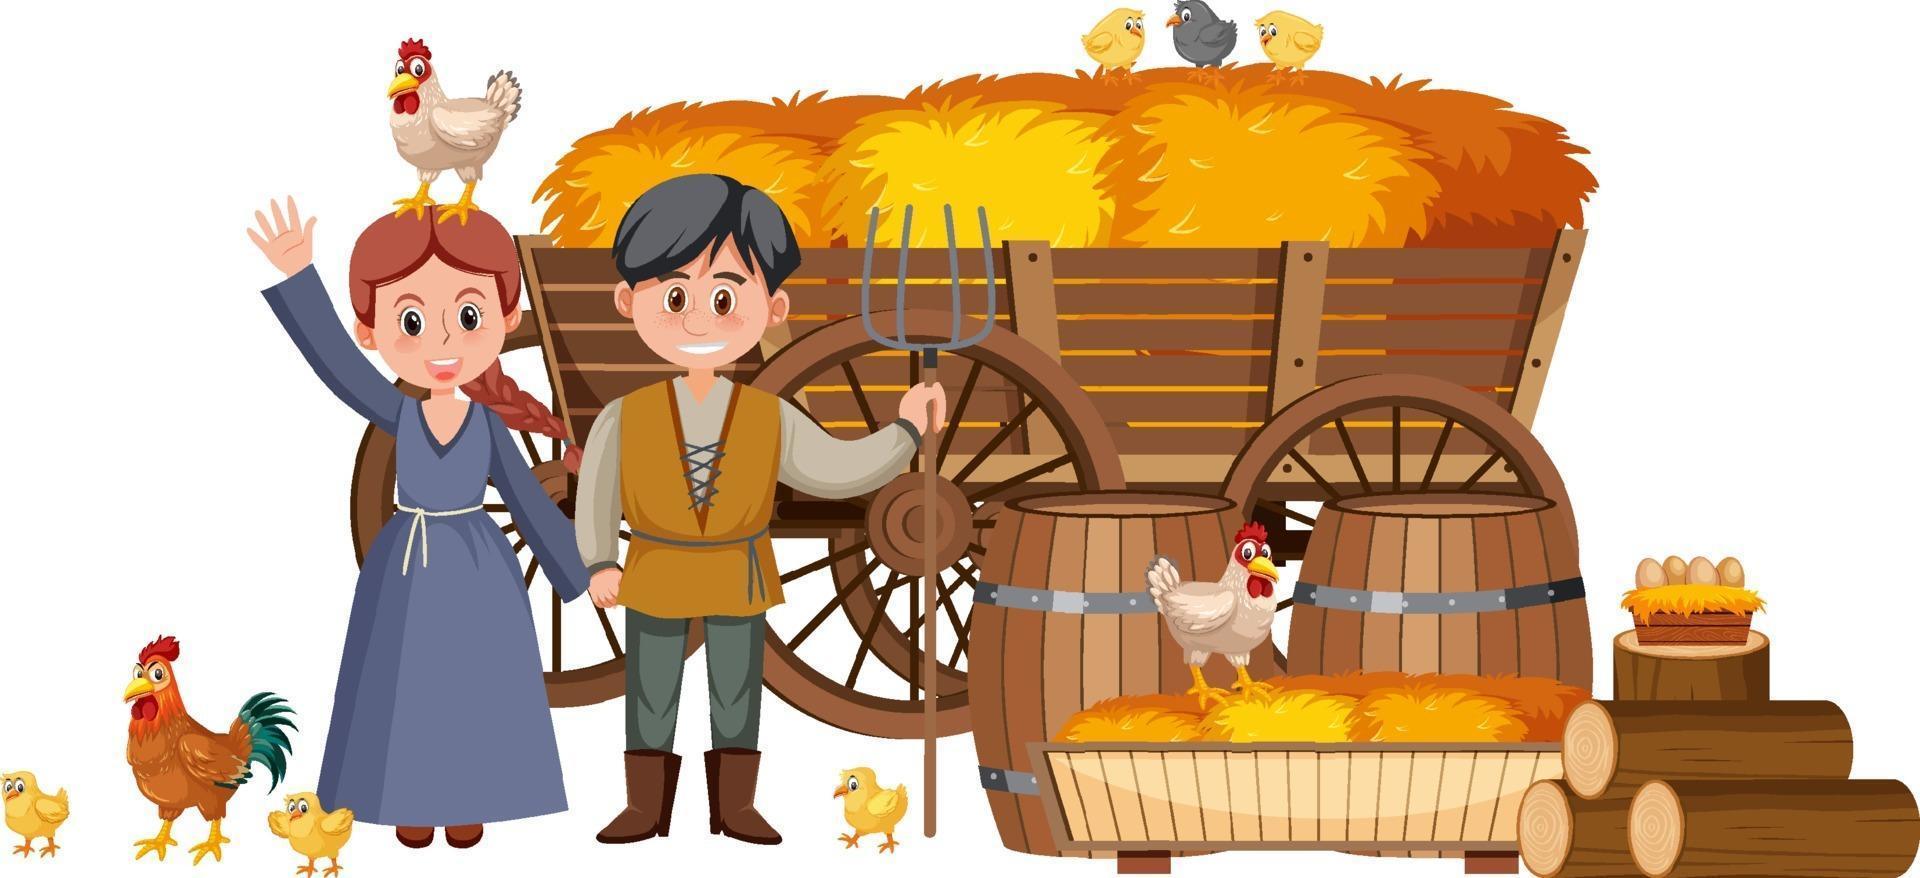 casal camponeses medievais com palheiro em uma carroça vetor